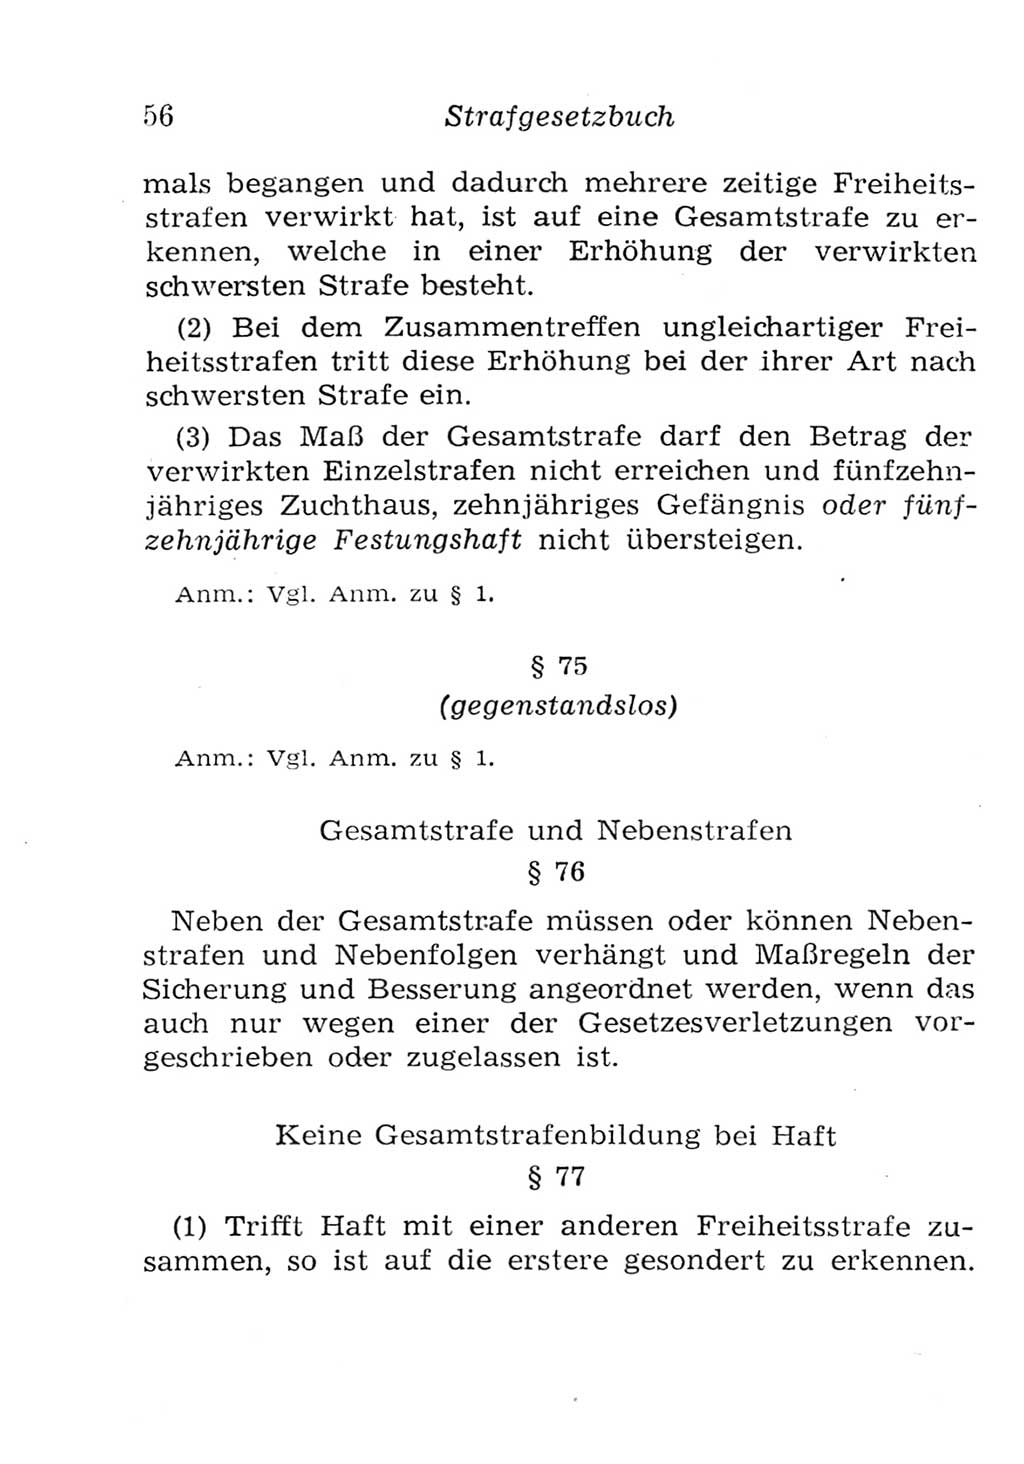 Strafgesetzbuch (StGB) und andere Strafgesetze [Deutsche Demokratische Republik (DDR)] 1957, Seite 56 (StGB Strafges. DDR 1957, S. 56)